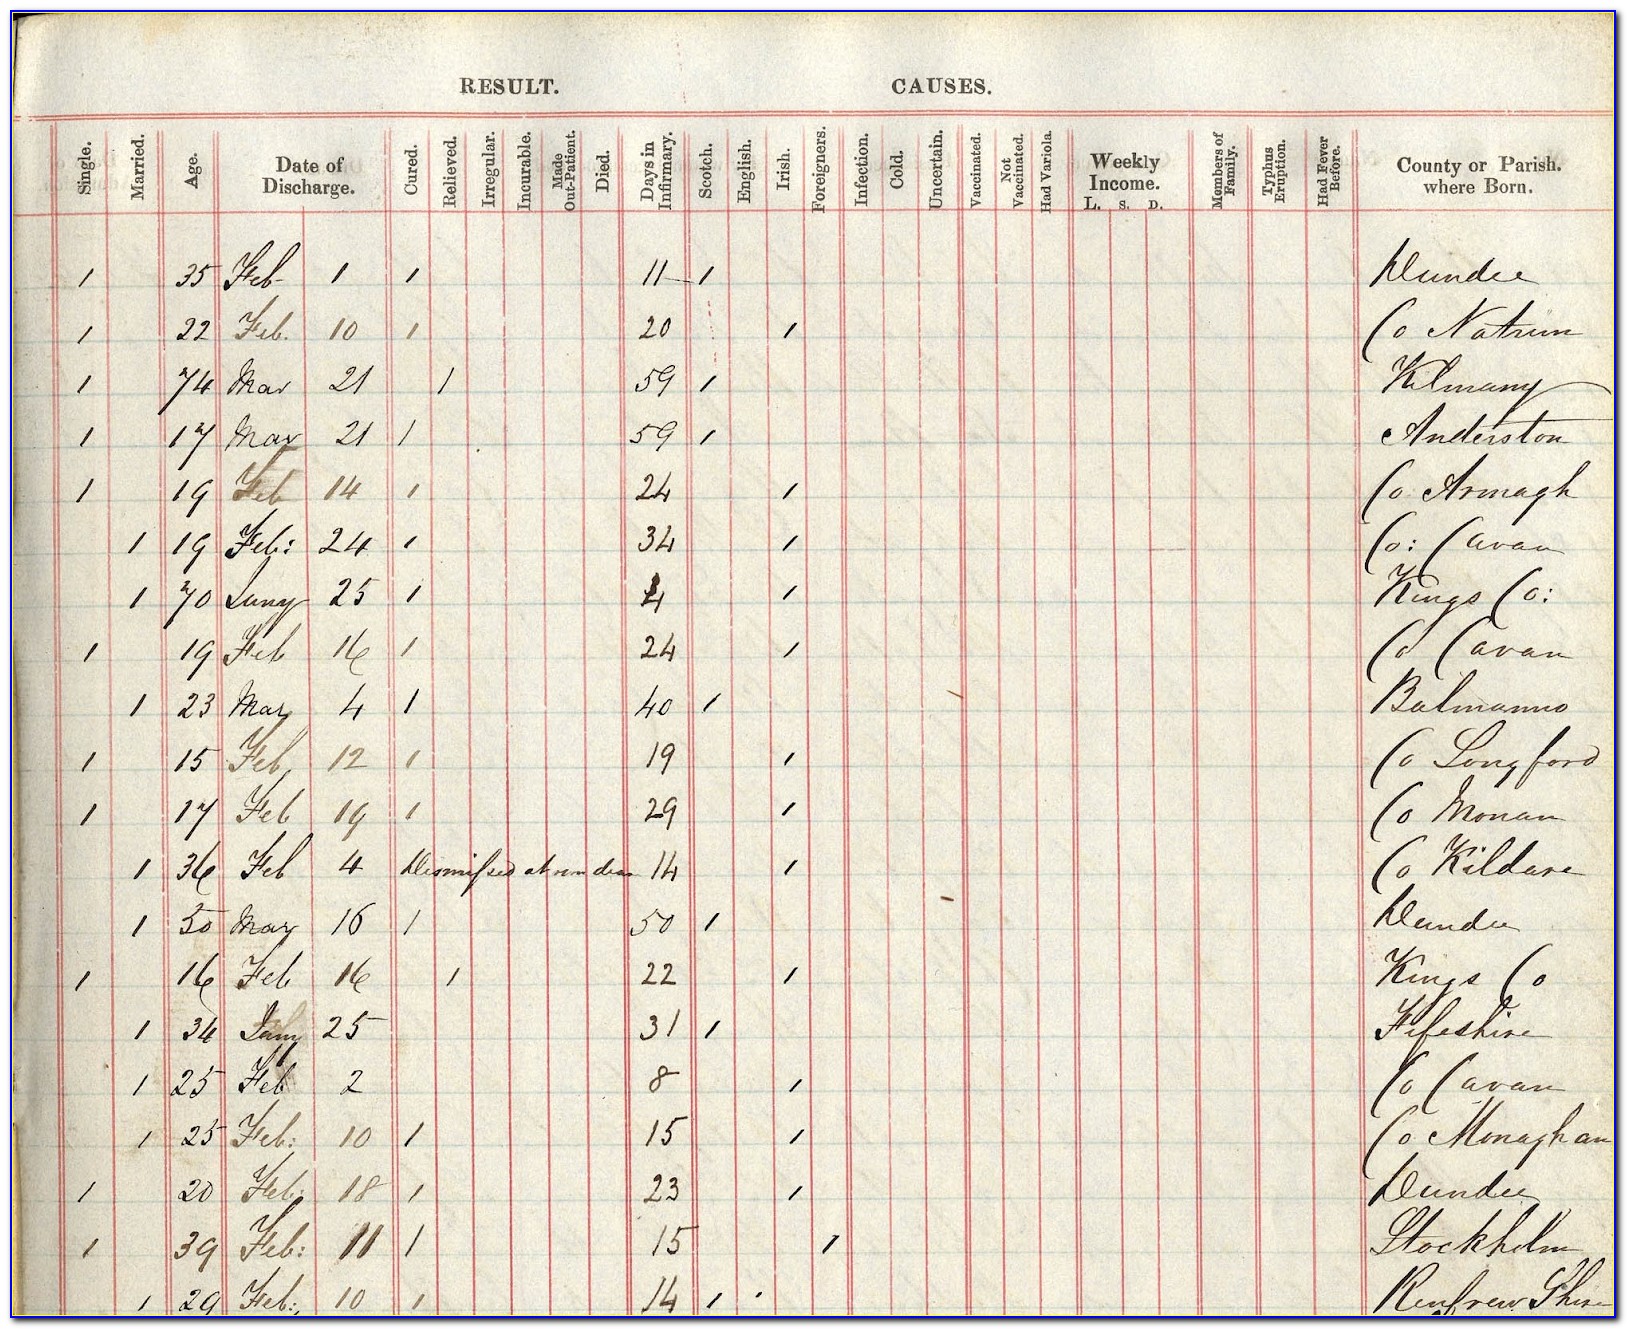 Birth Certificate Replacement Hoboken Nj